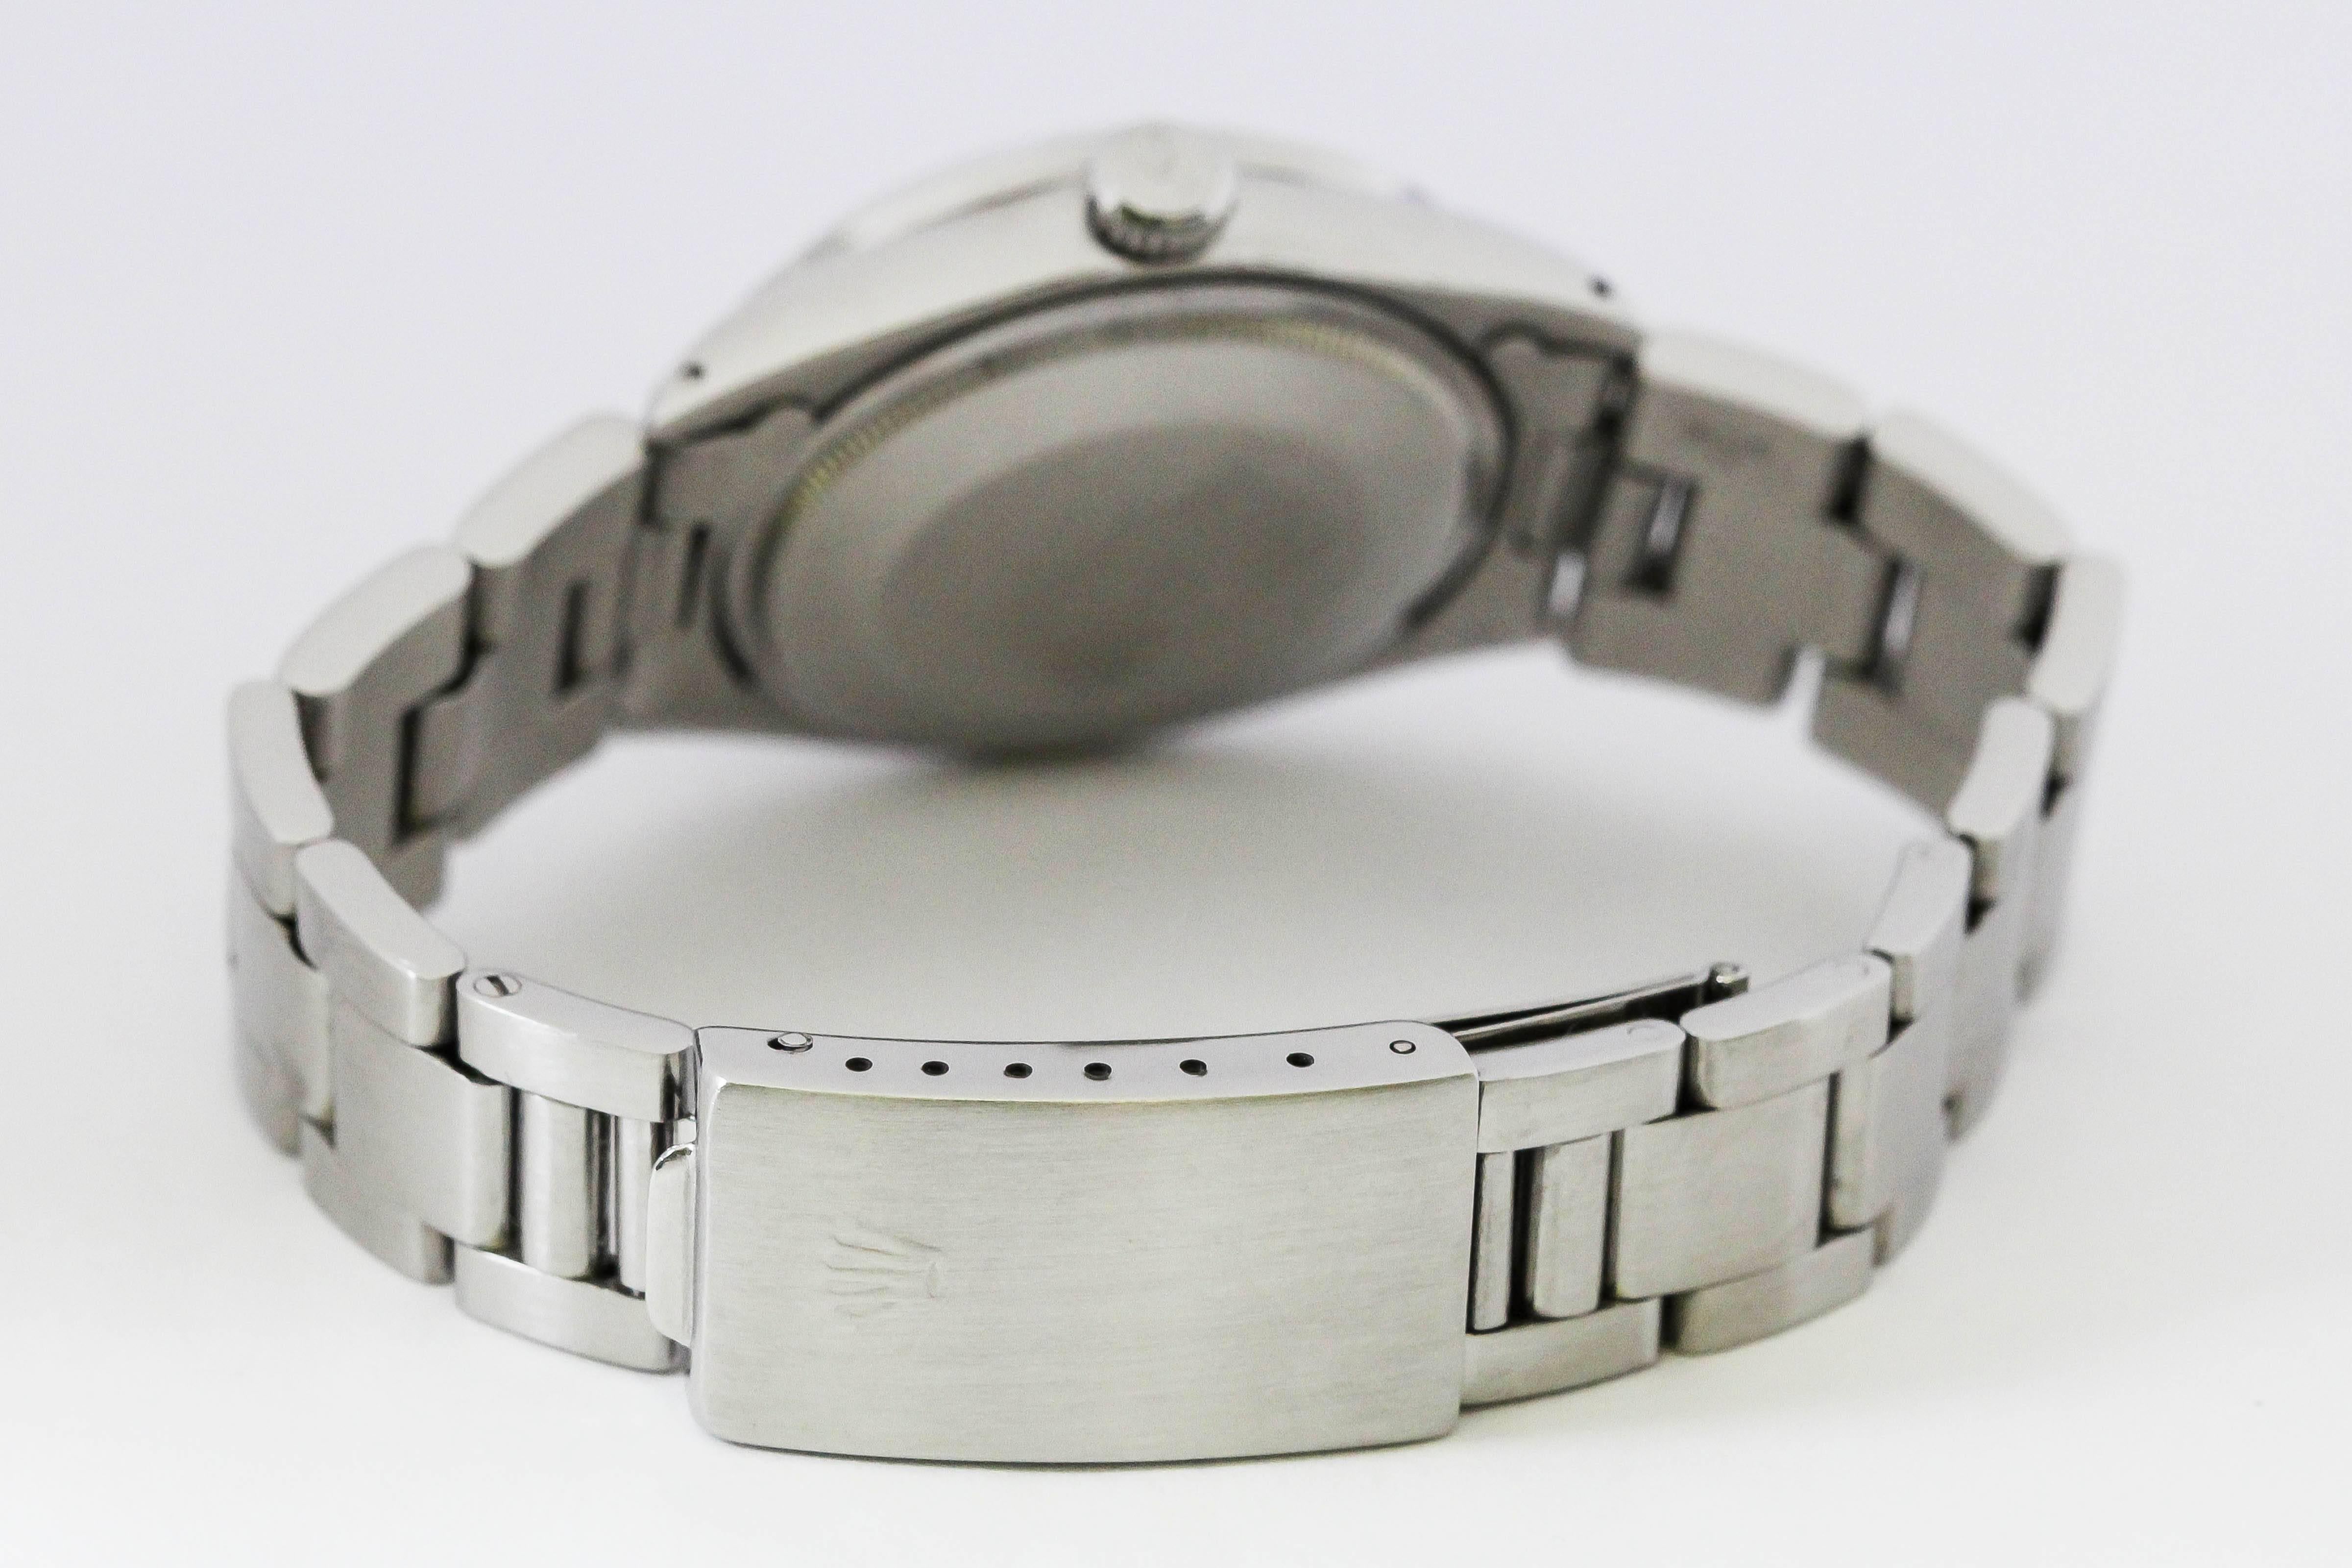 Men's Rolex Stainless Steel Date Wristwatch Ref 1501, circa 1970